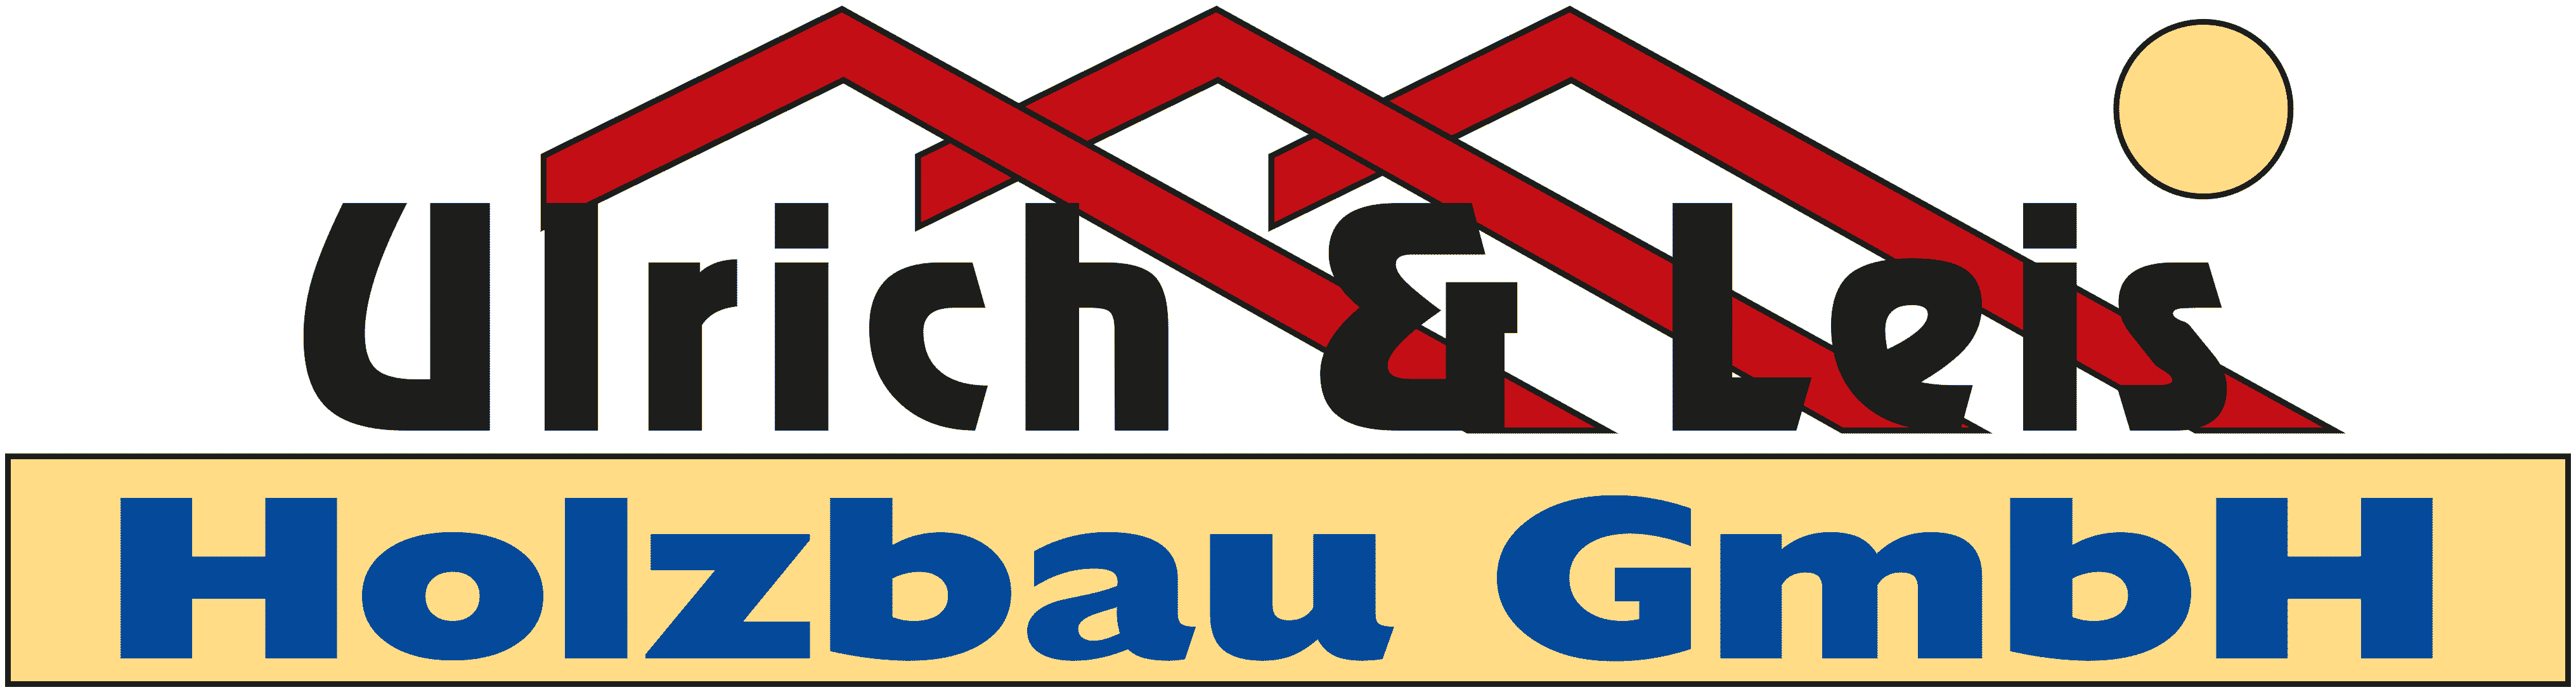 Ulrich Holzbau GmbH